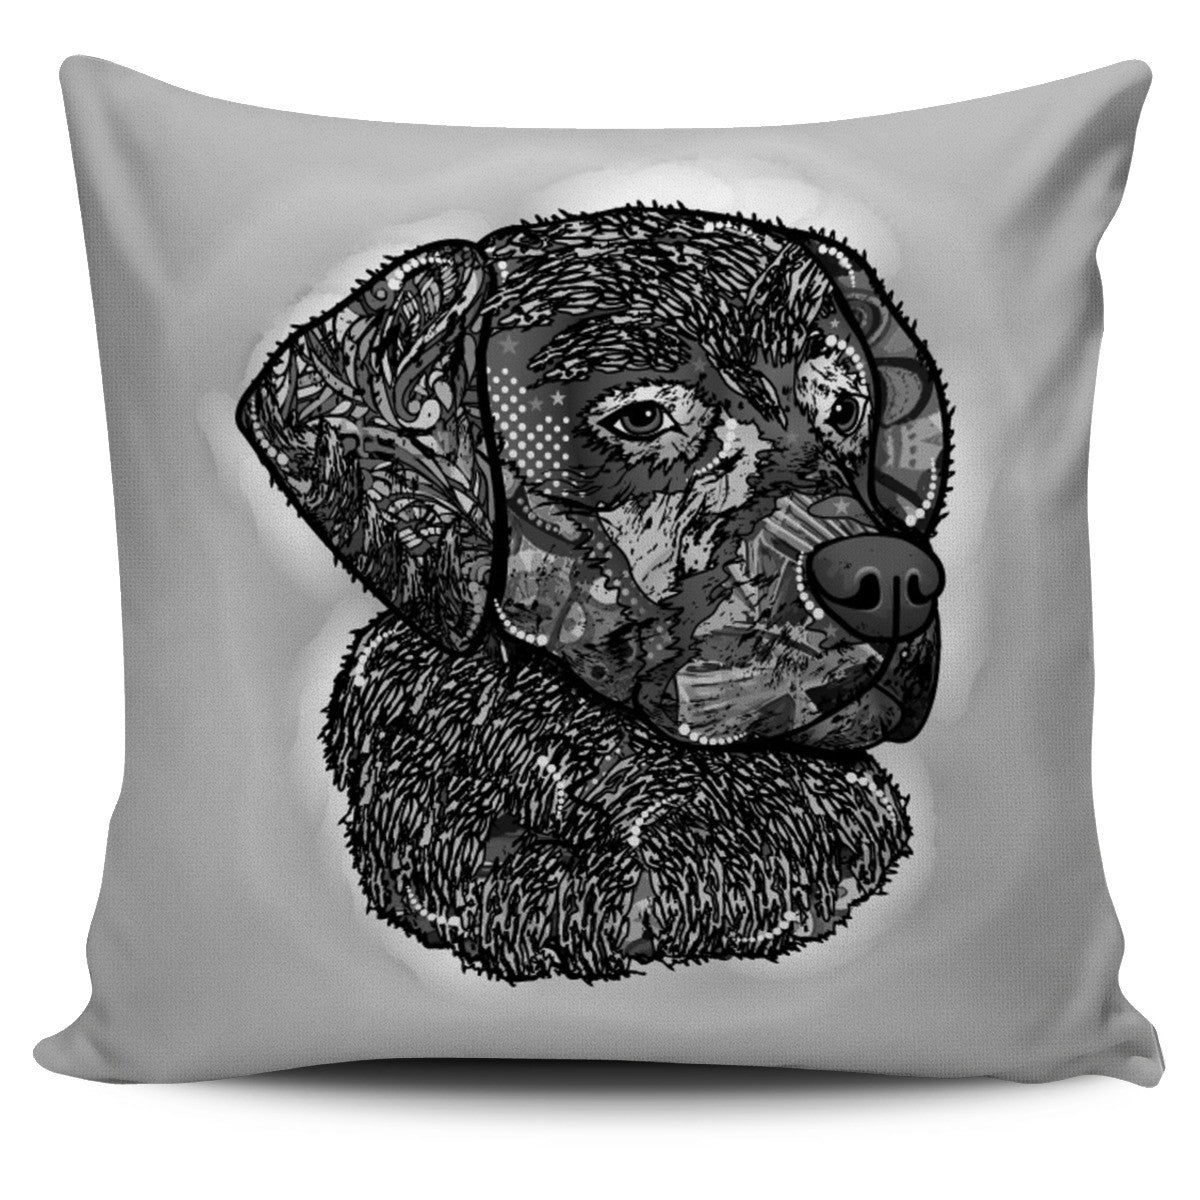 Labrador Series Pillow Cover - Hello Moa